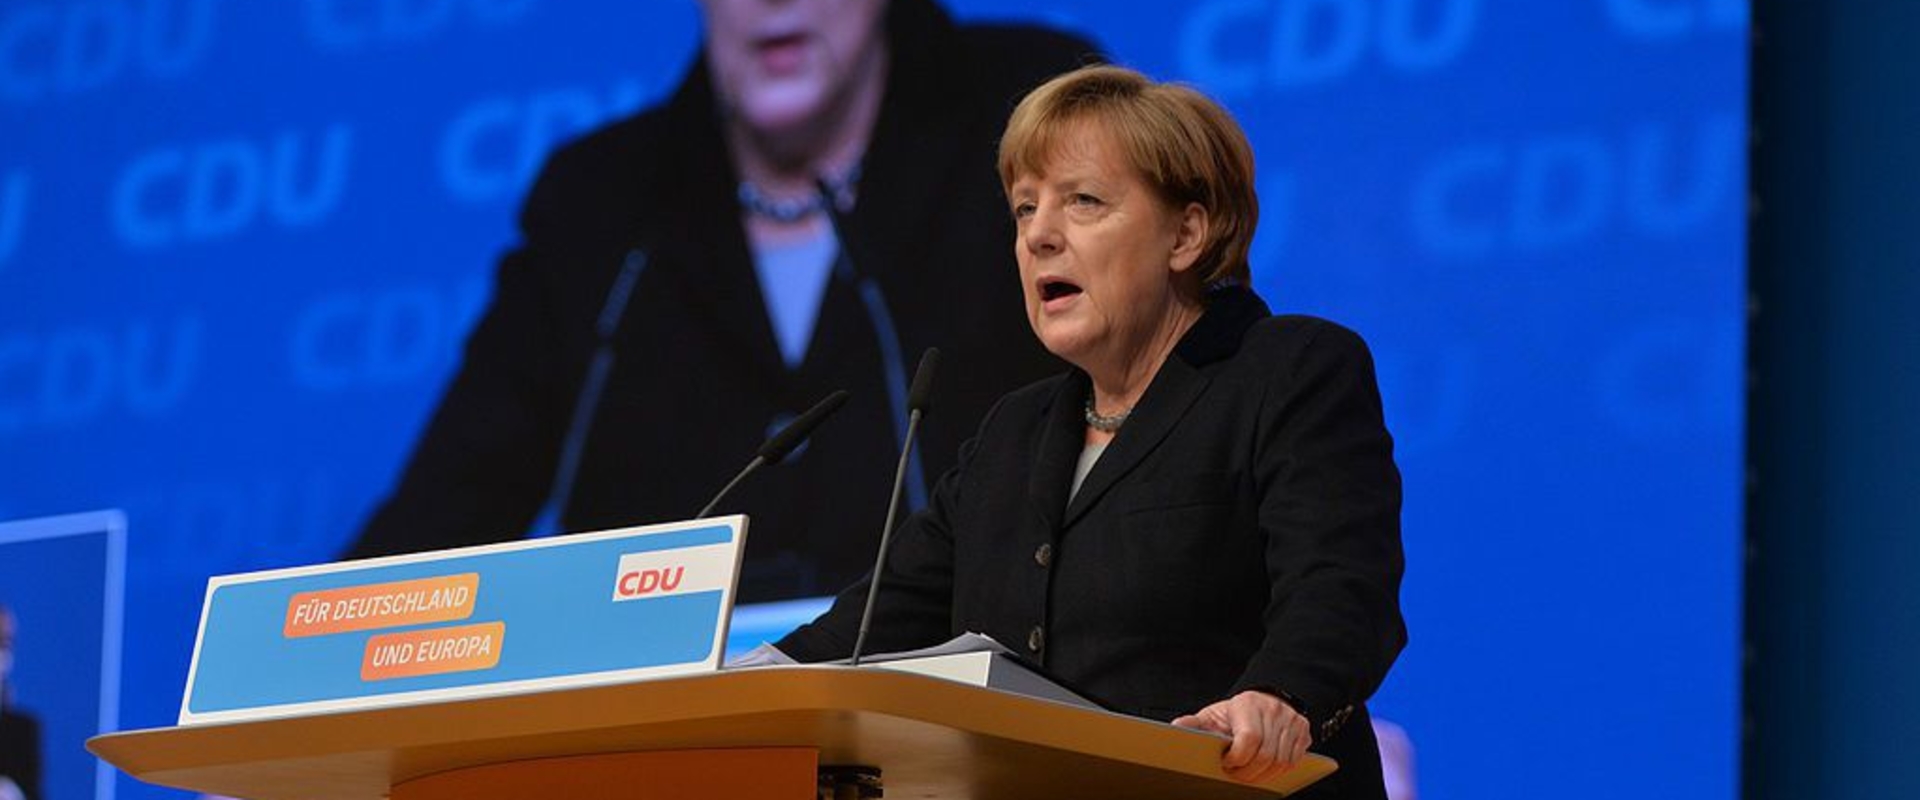 Merkel az e-sportot is kampányba foglalta